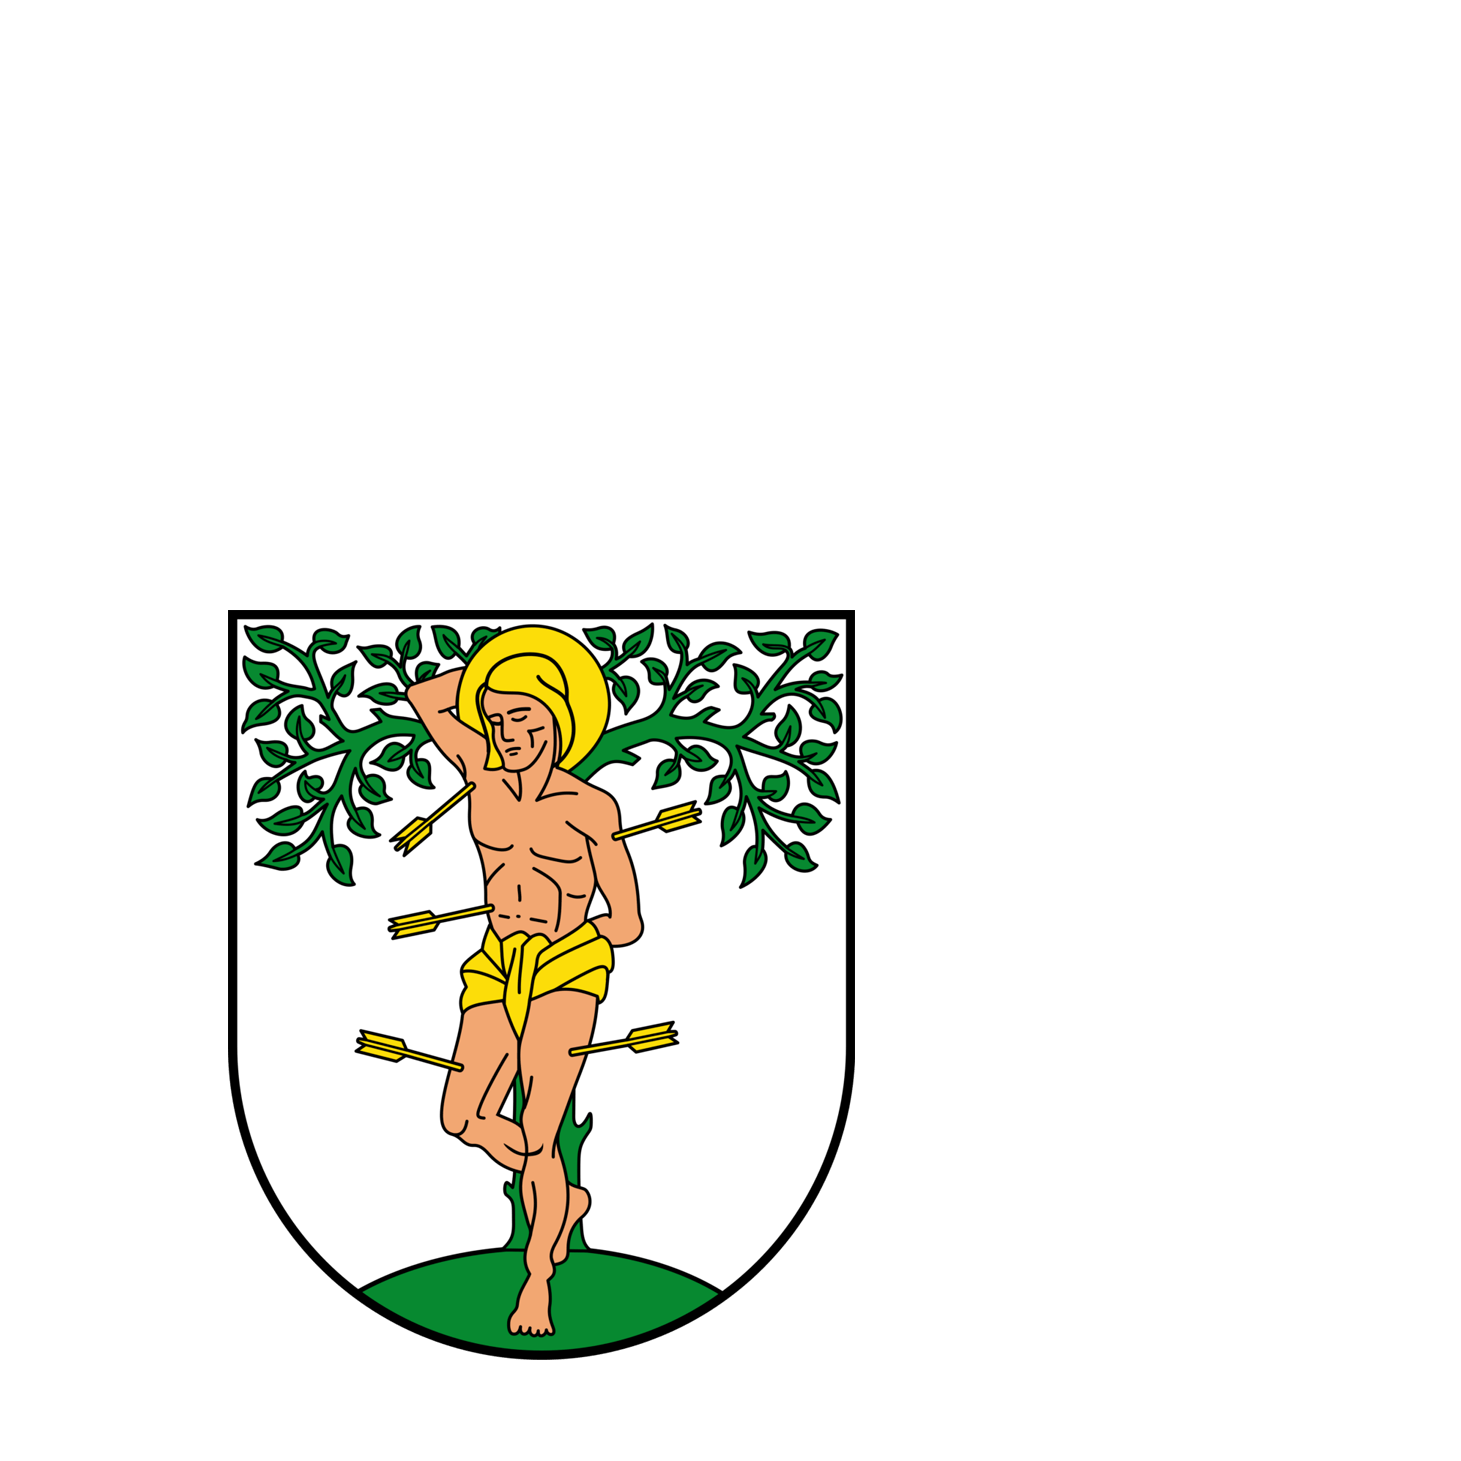 Wappen der Stadt Blieskastel - © Stadt Blieskastel